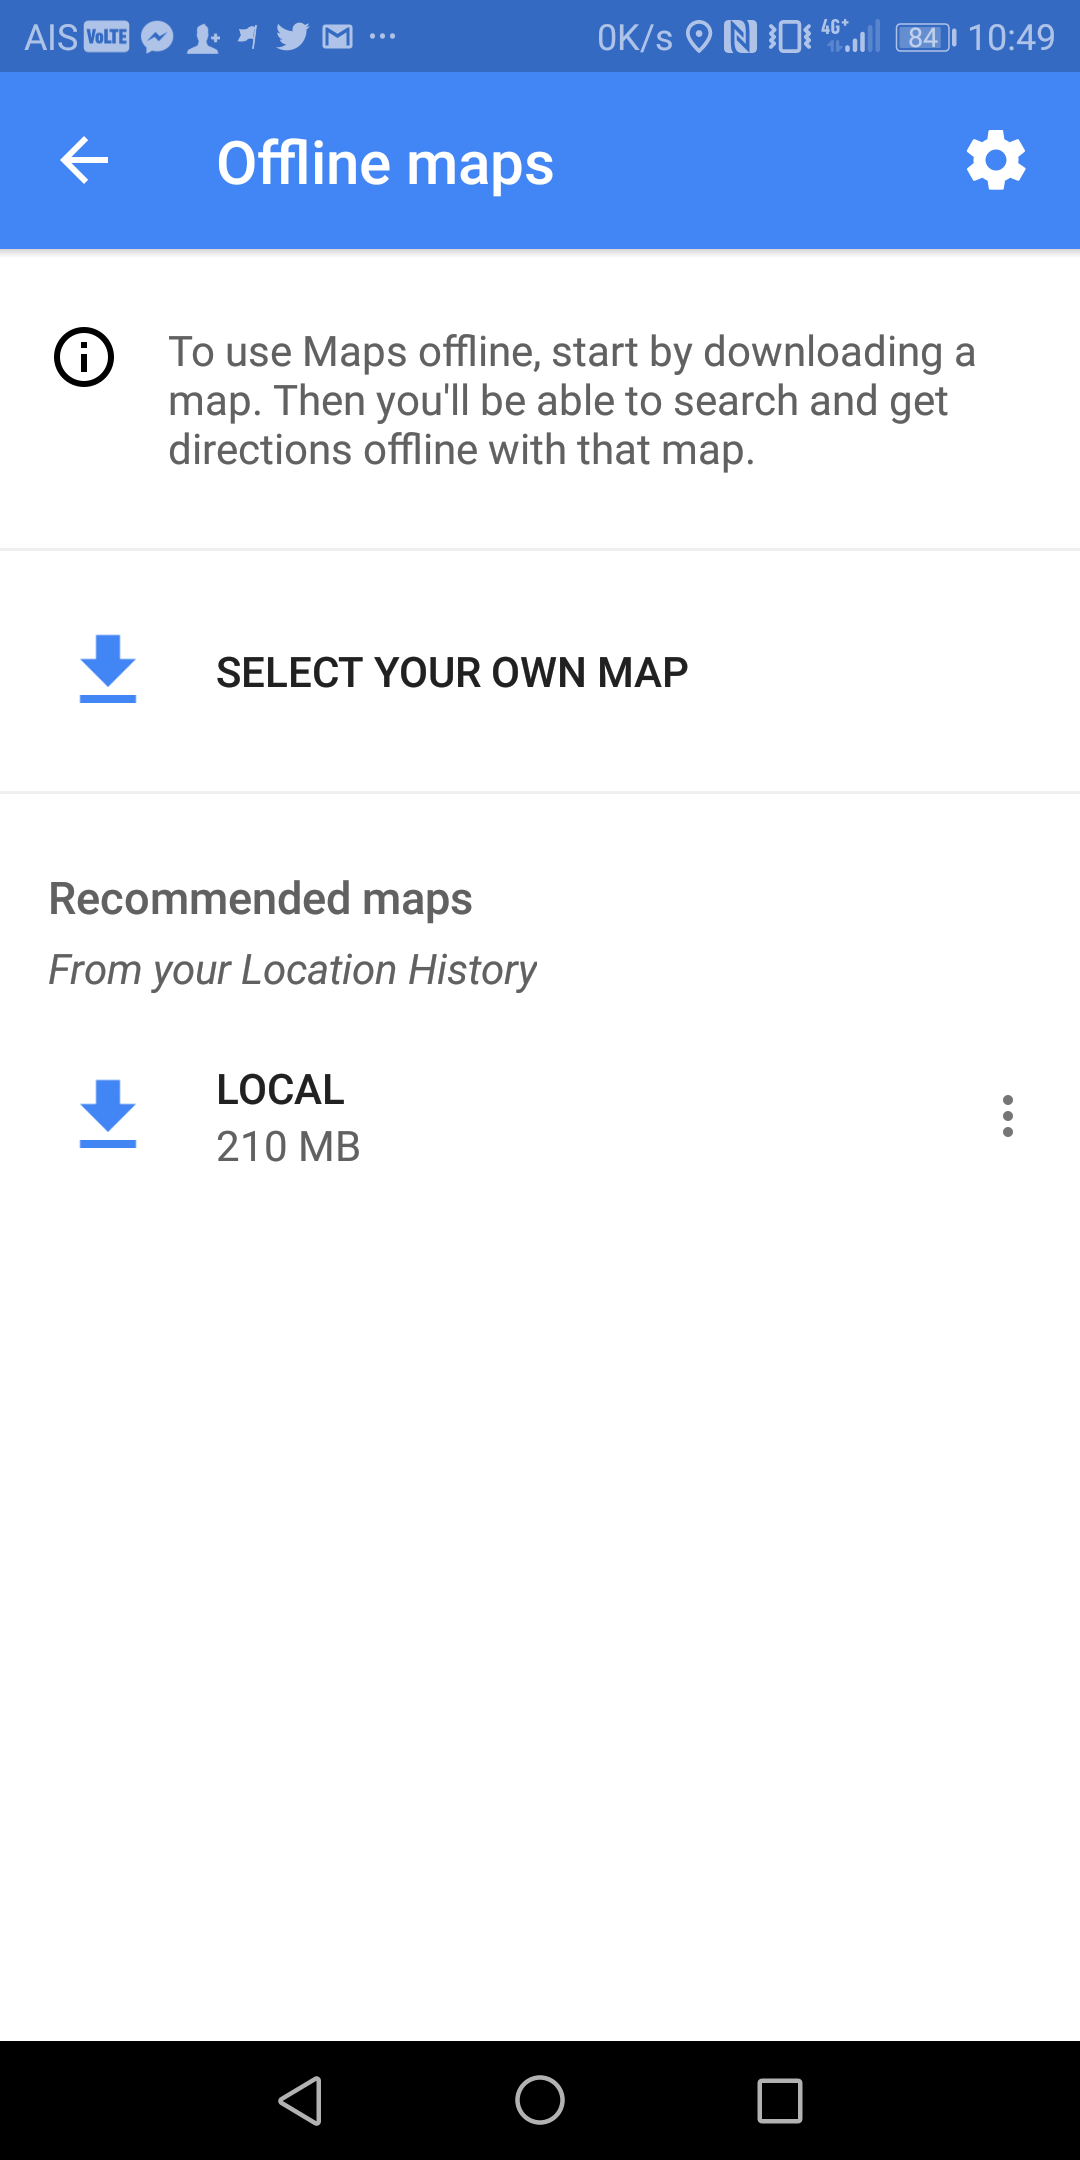 มาซะงั้น.. Google Maps เปิดให้คนไทยสามารถโหลดแผนที่ Offline มาเก็บบนเครื่องได้แล้ว